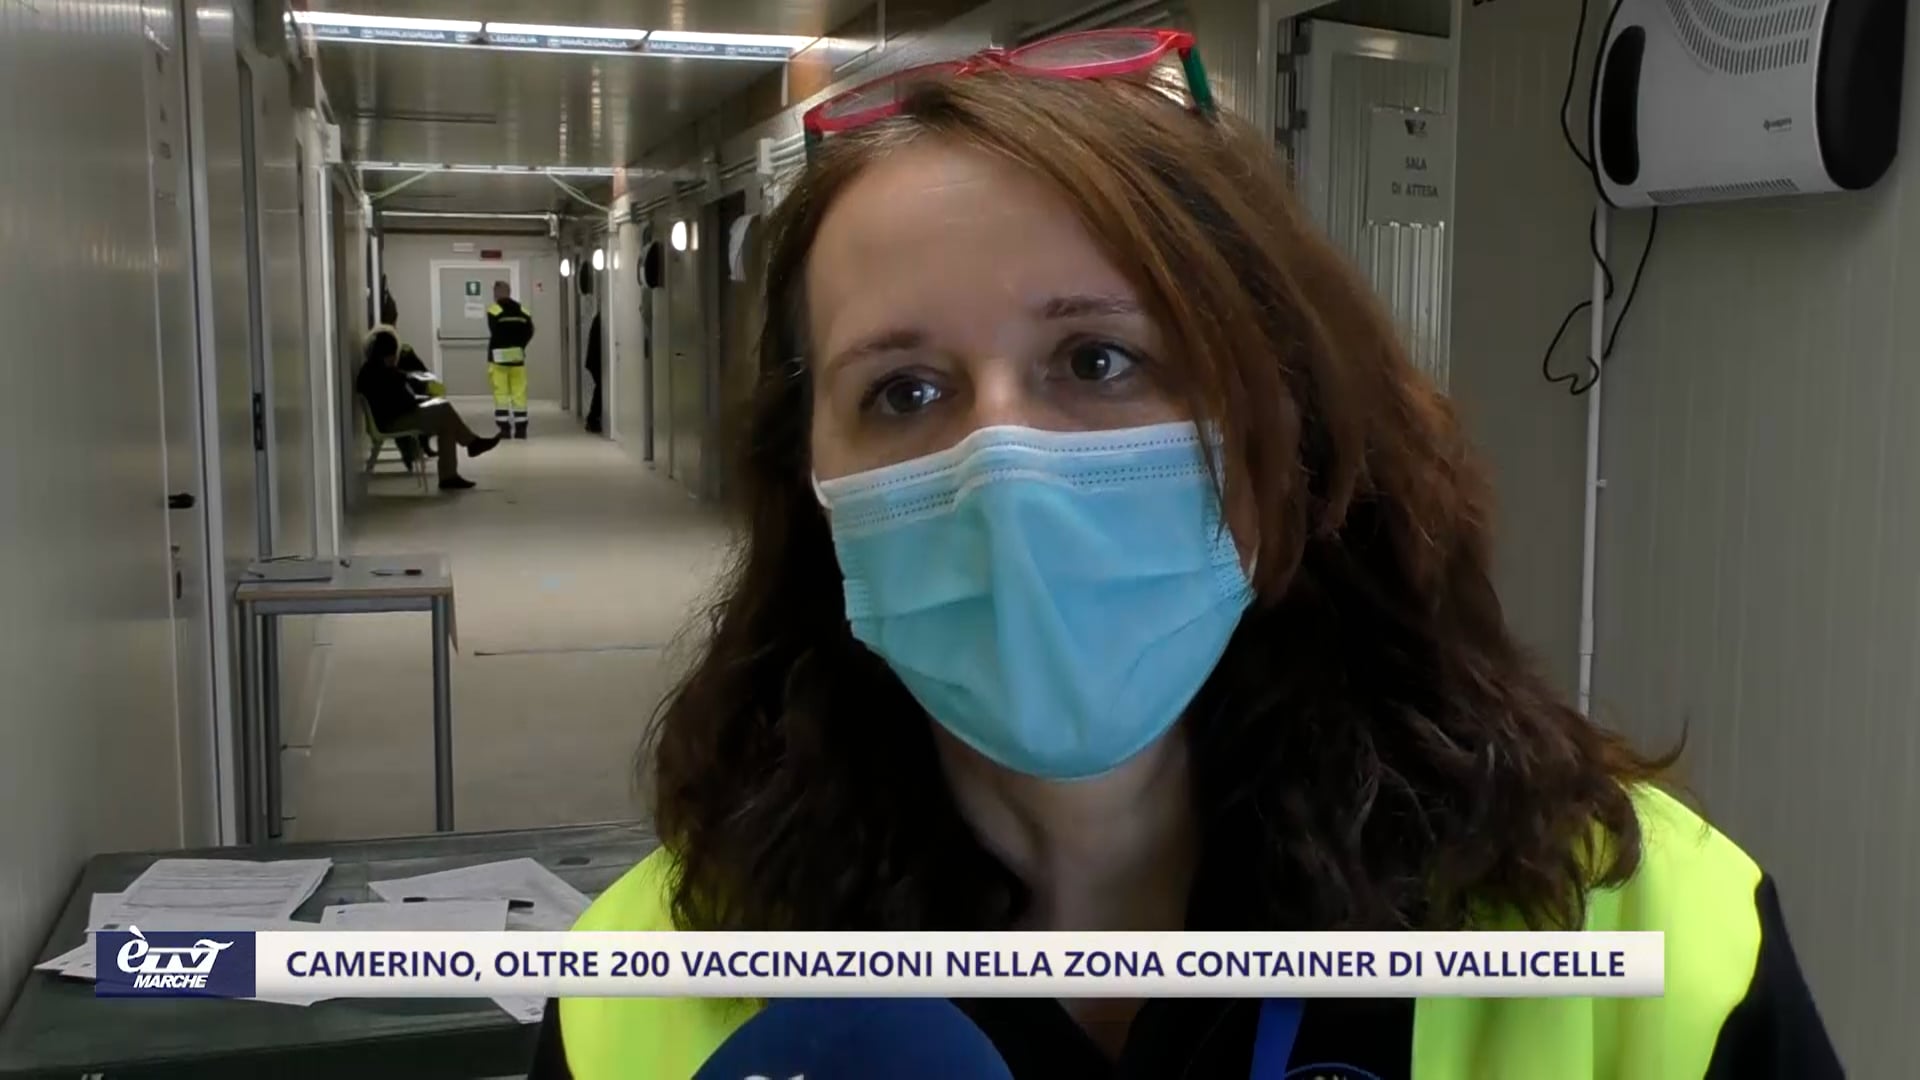 Camerino, oltre 200 vaccinazioni nella zona container di Vallicelle